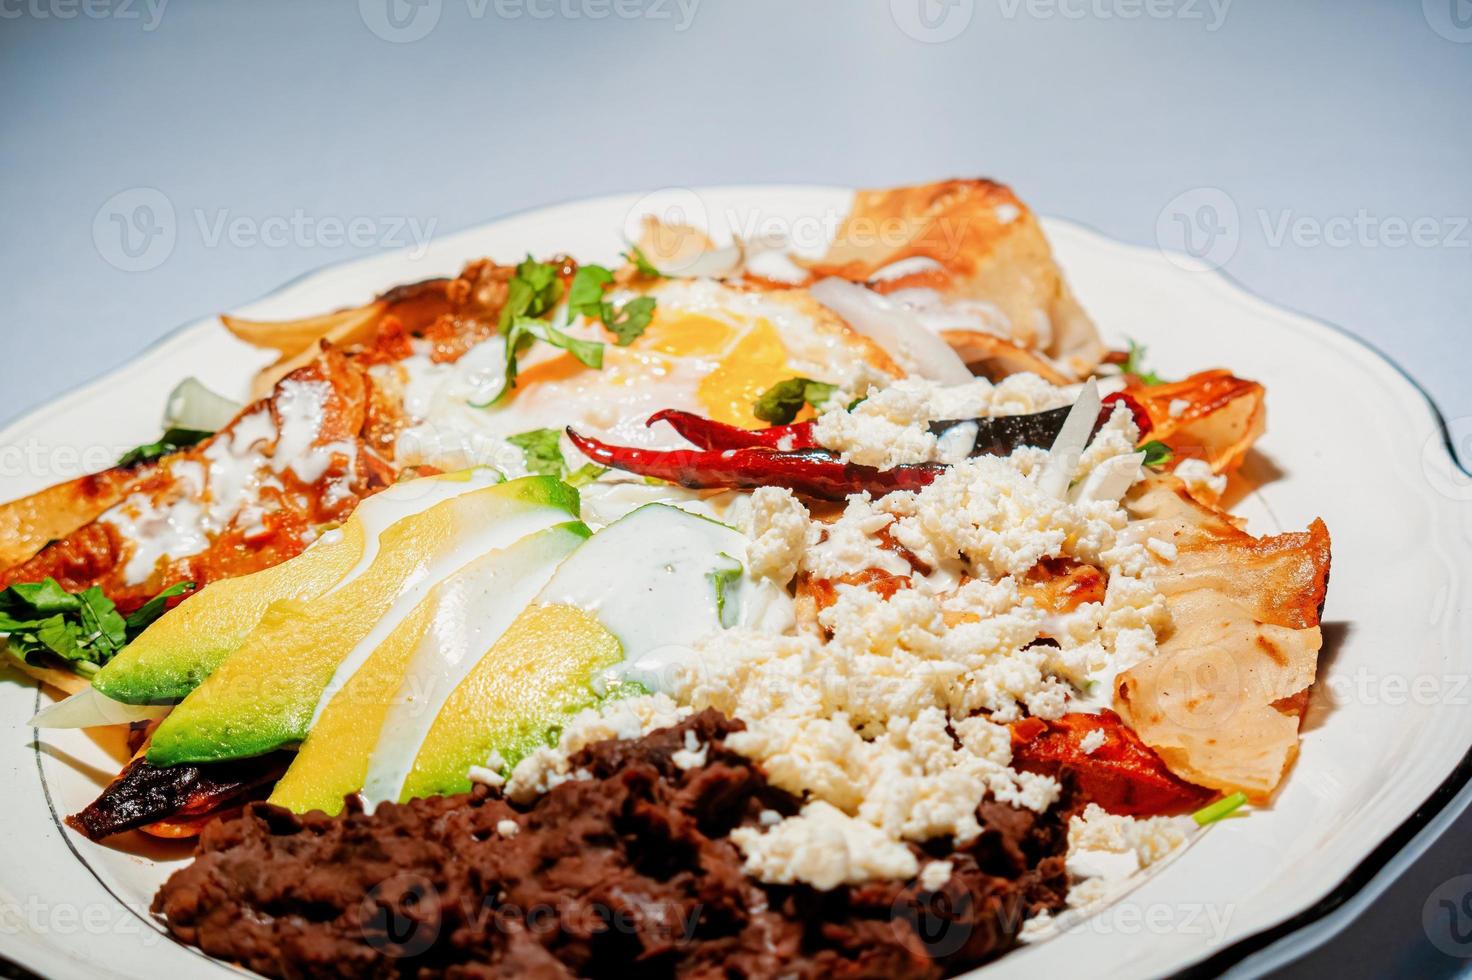 chilaquiles mexikansk mat med i röd sås, ost, grädde och chili paprikor på årgång bakgrund foto